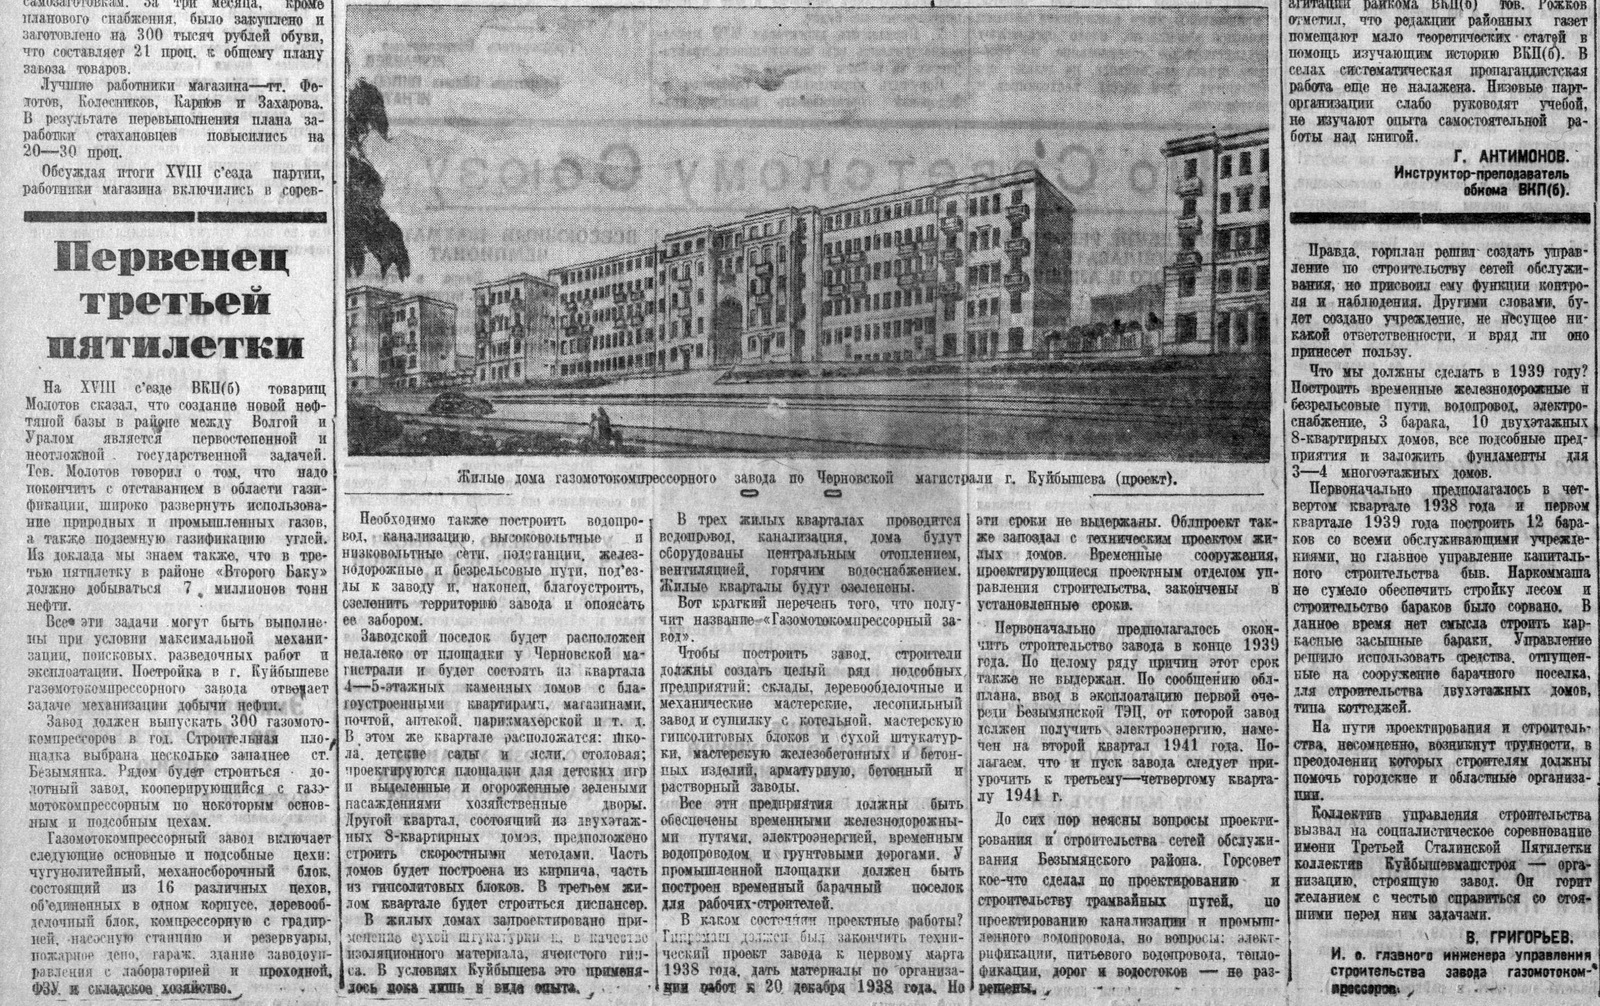 ФОТО-04-Брусчатый-ВКа-1939-планы-Машстроя